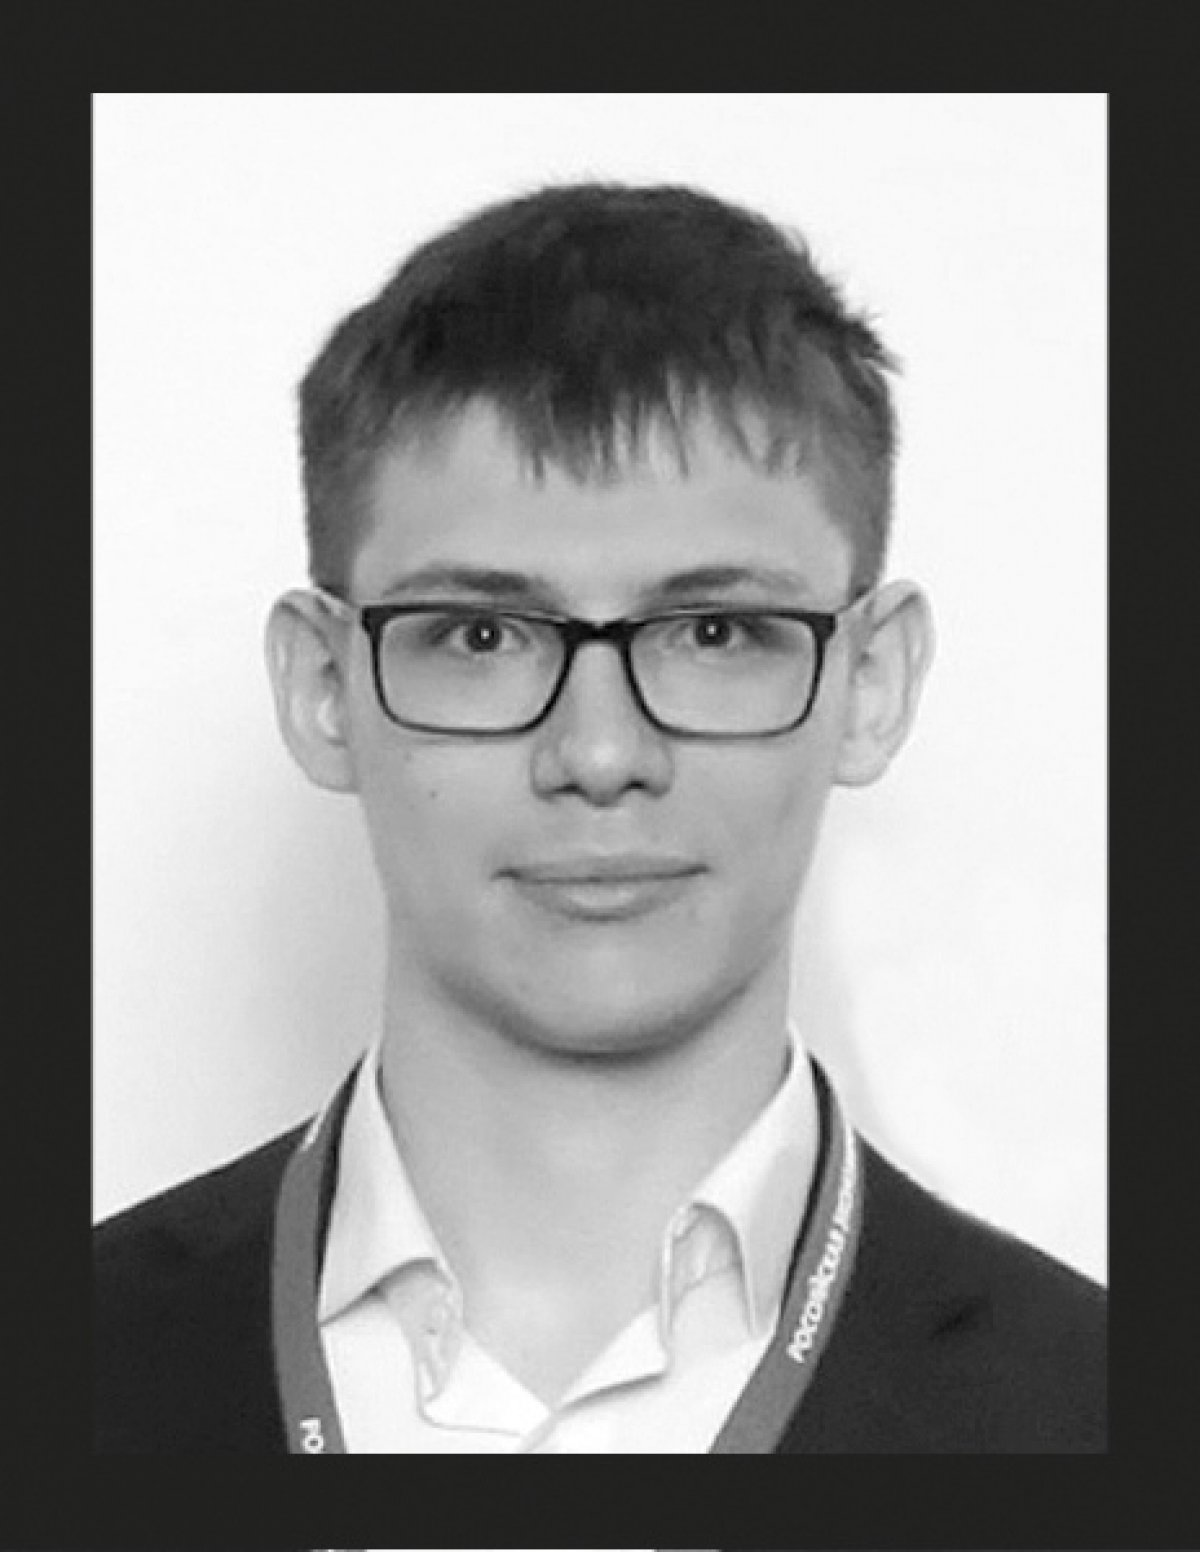 С прискорбием сообщаем, что 5 августа в результате несчастного случая погиб наш выпускник Евгений Горев. Ему было 22 года, в этом году он окончил программу бакалавриата (BAE'2018).